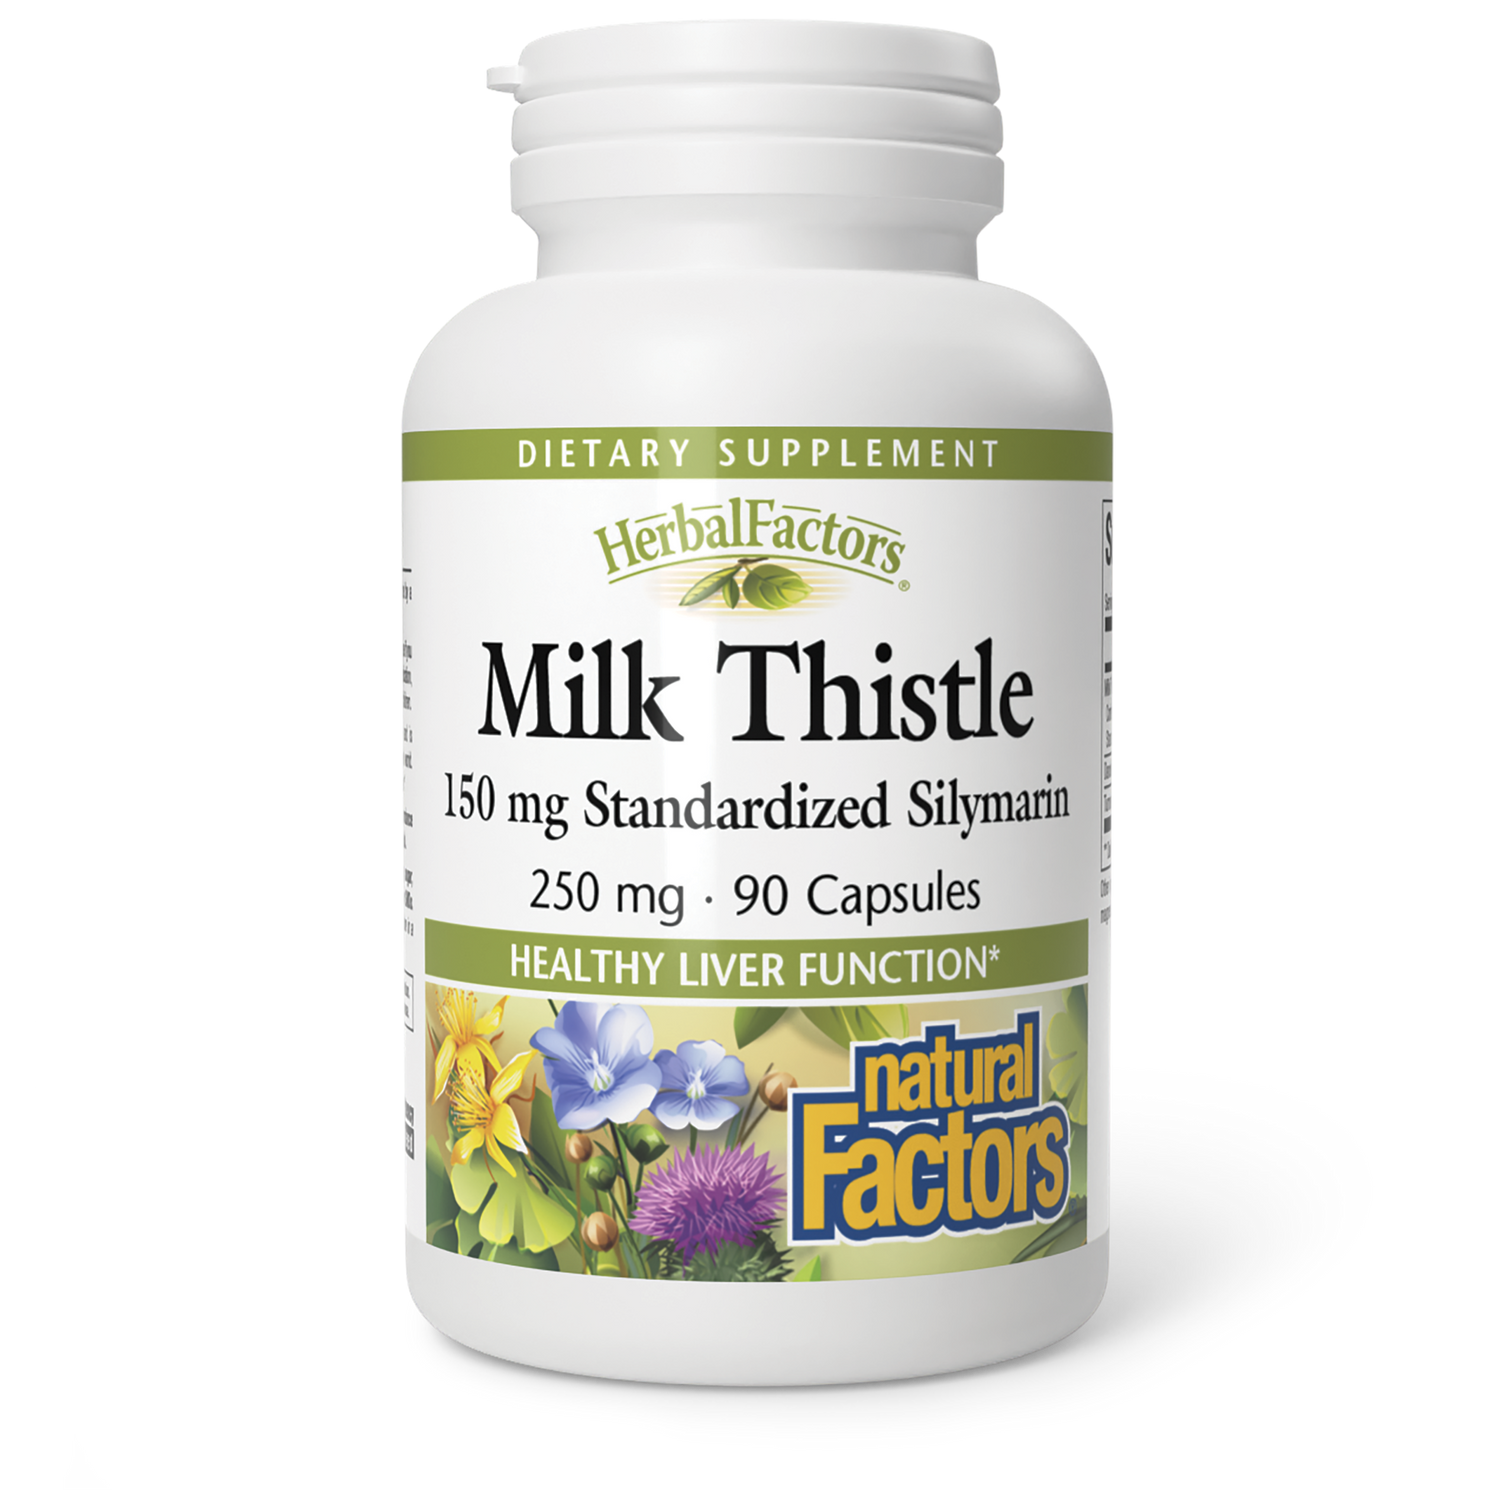 Milk Thistle|variant|hi-res|4181U